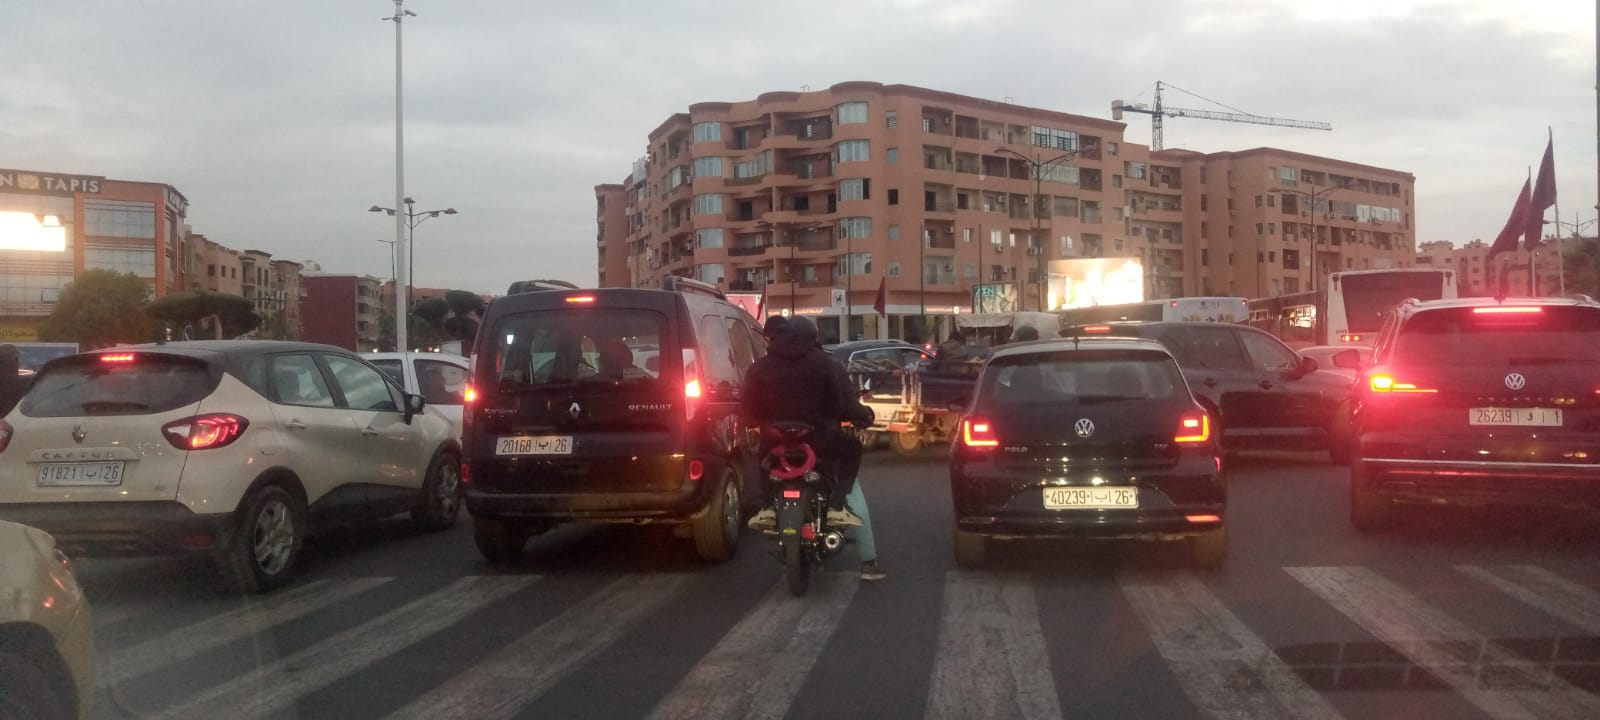 إختناق مروري على مستوى الطريق الوطنية رقم 9 يعرقل حركة السير بمدخل مدينة مراكش